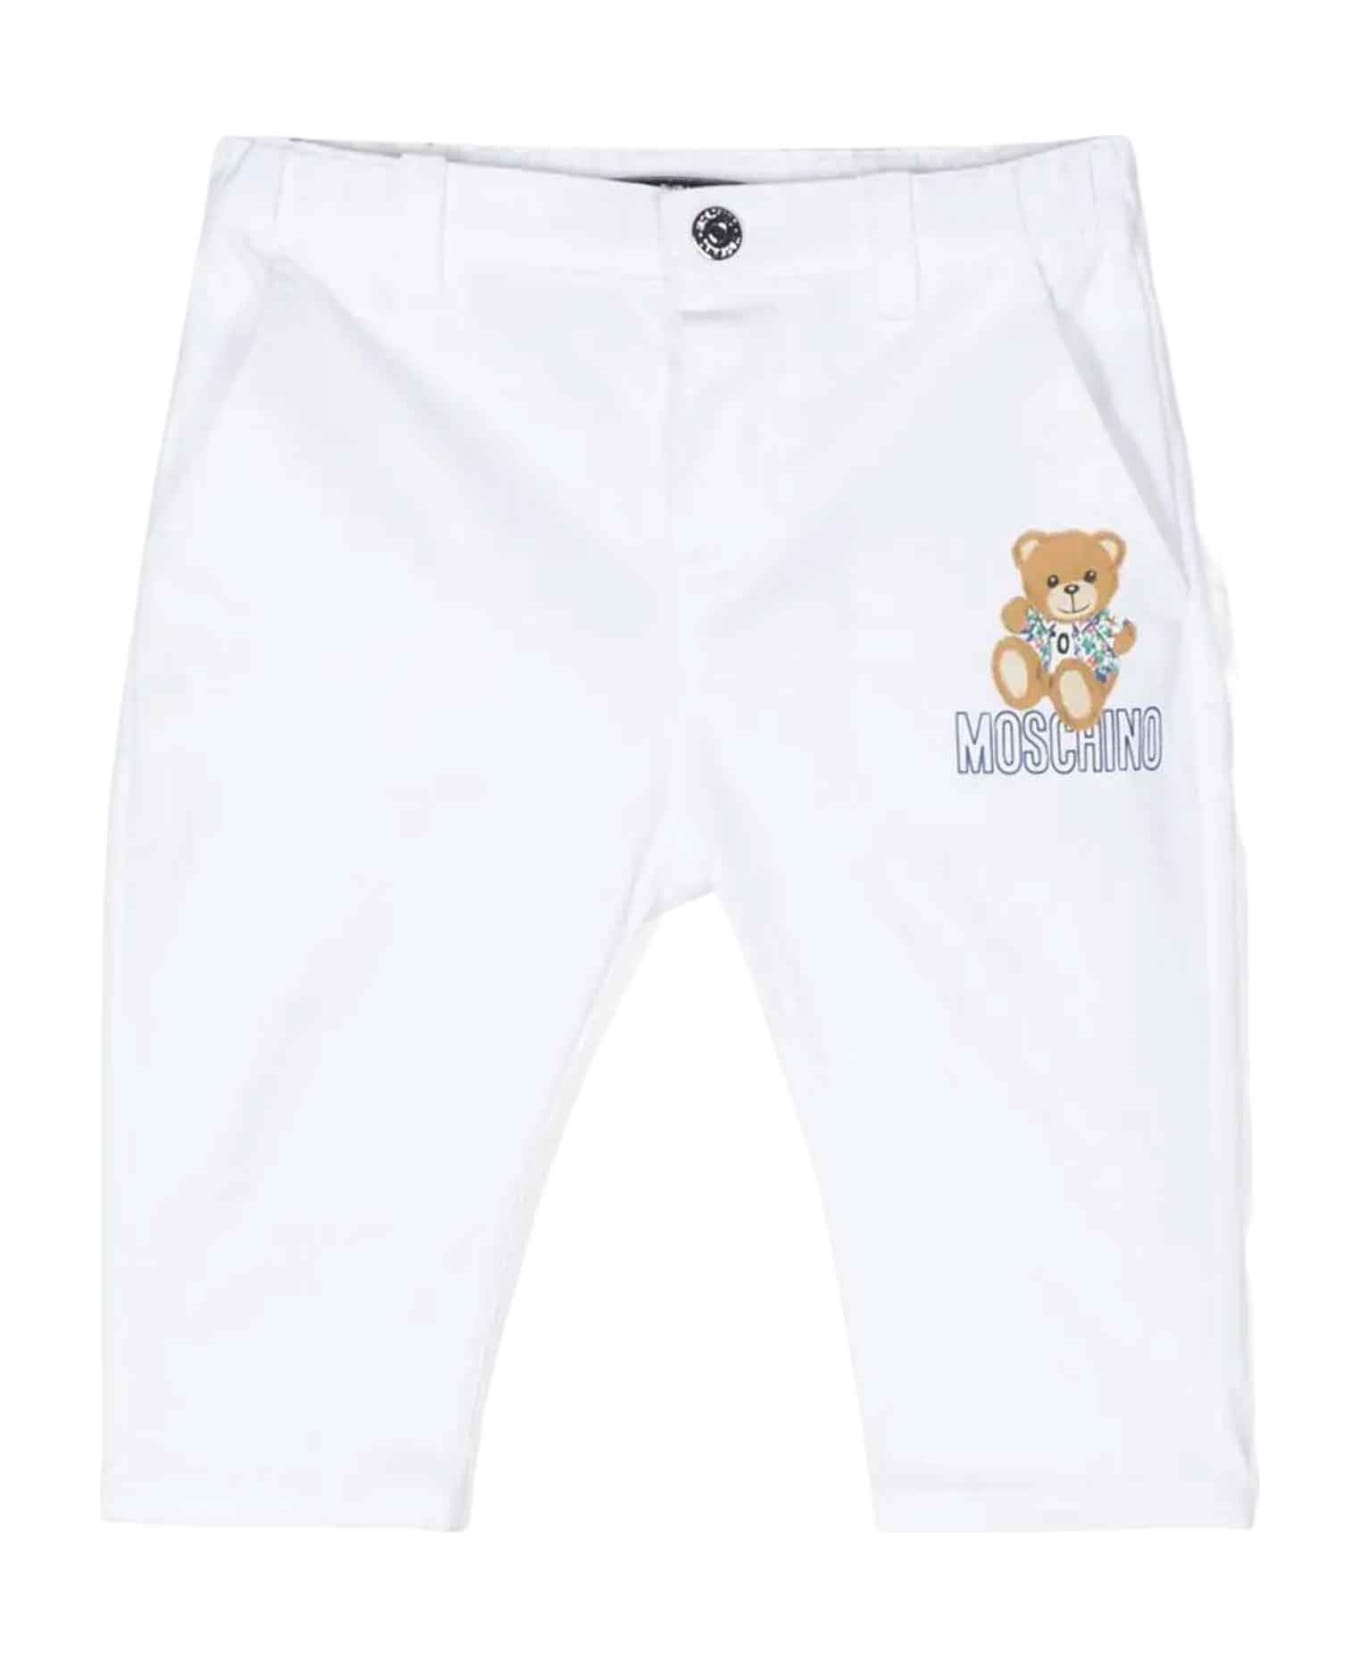 Moschino White Trousers Baby Unisex - Bianco